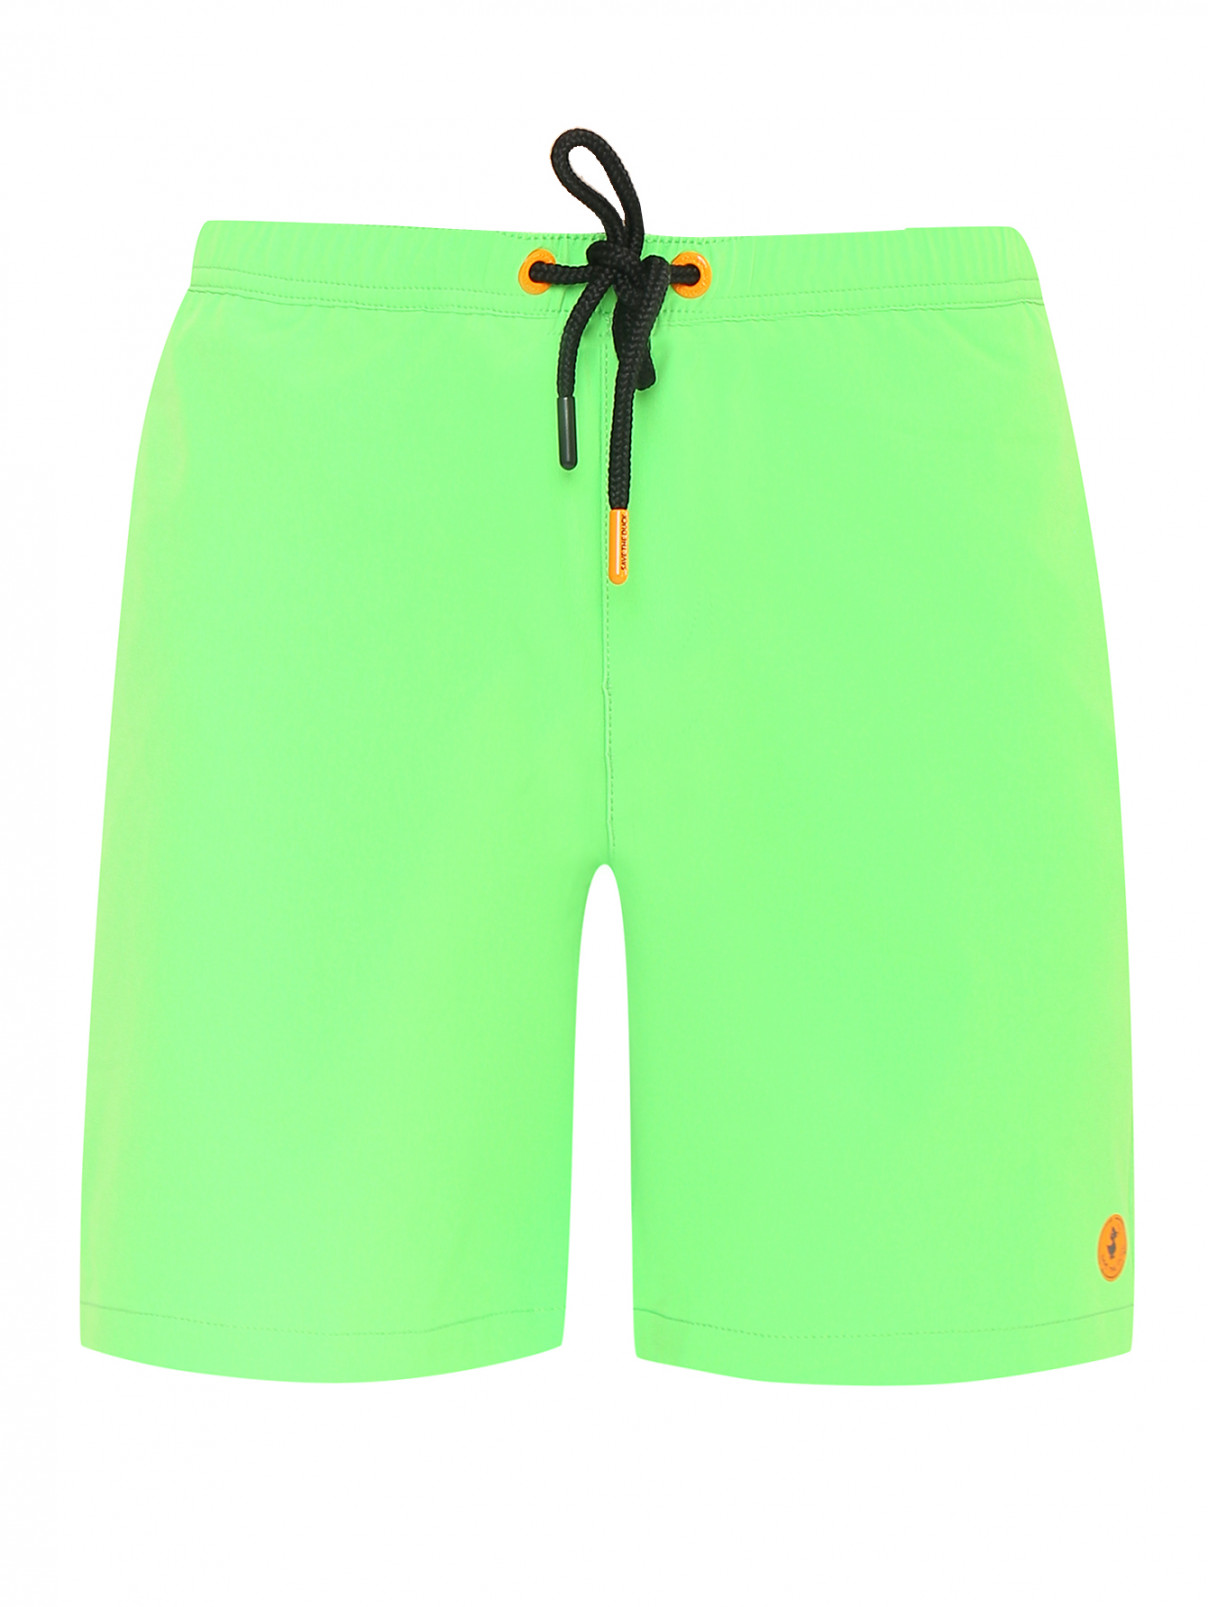 Однотонные шорты для купания Save the Duck  –  Общий вид  – Цвет:  Зеленый